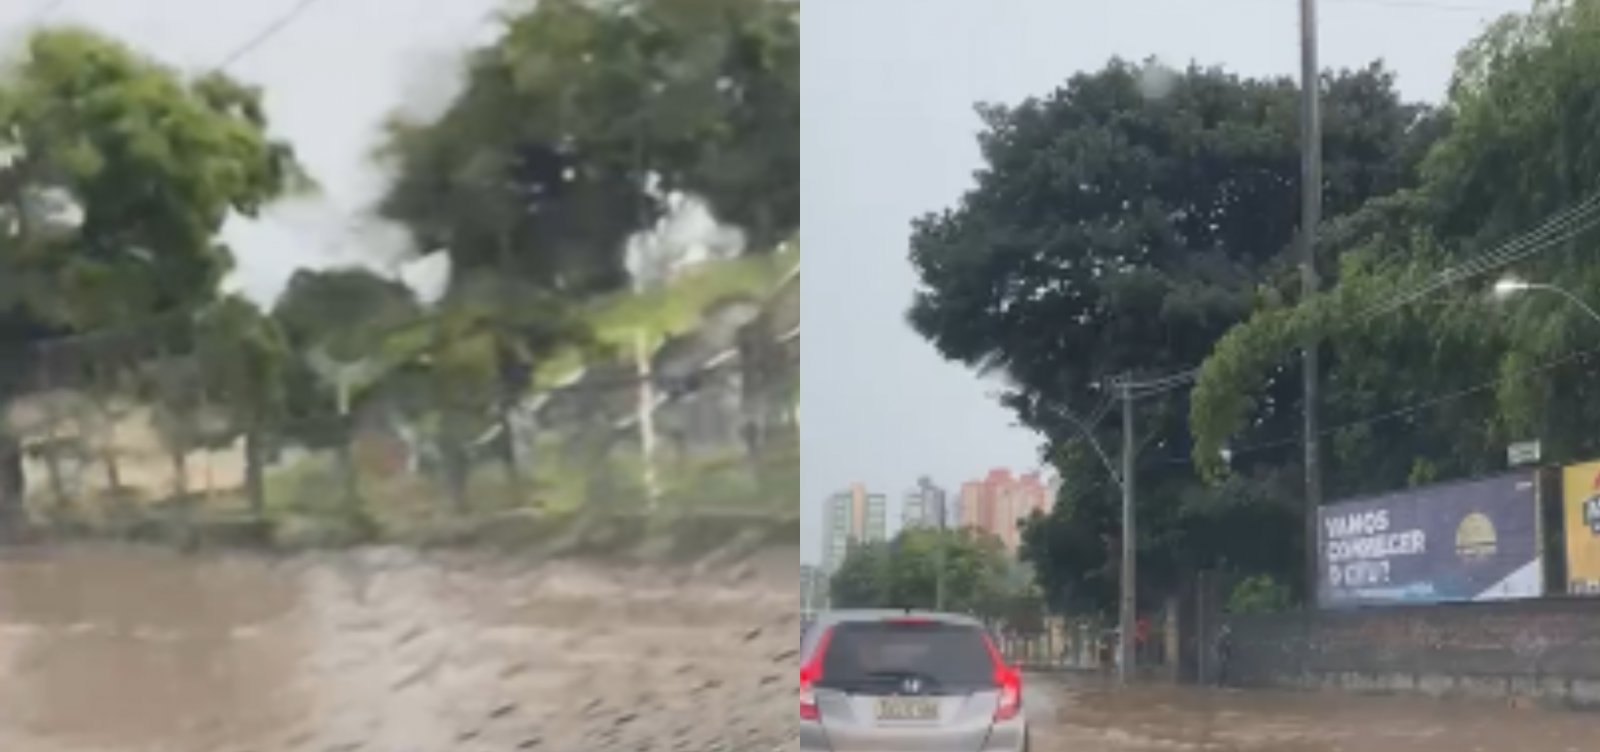 Motoristas em Salvador enfrentam congestionamento devido alagamentos causados pela chuva